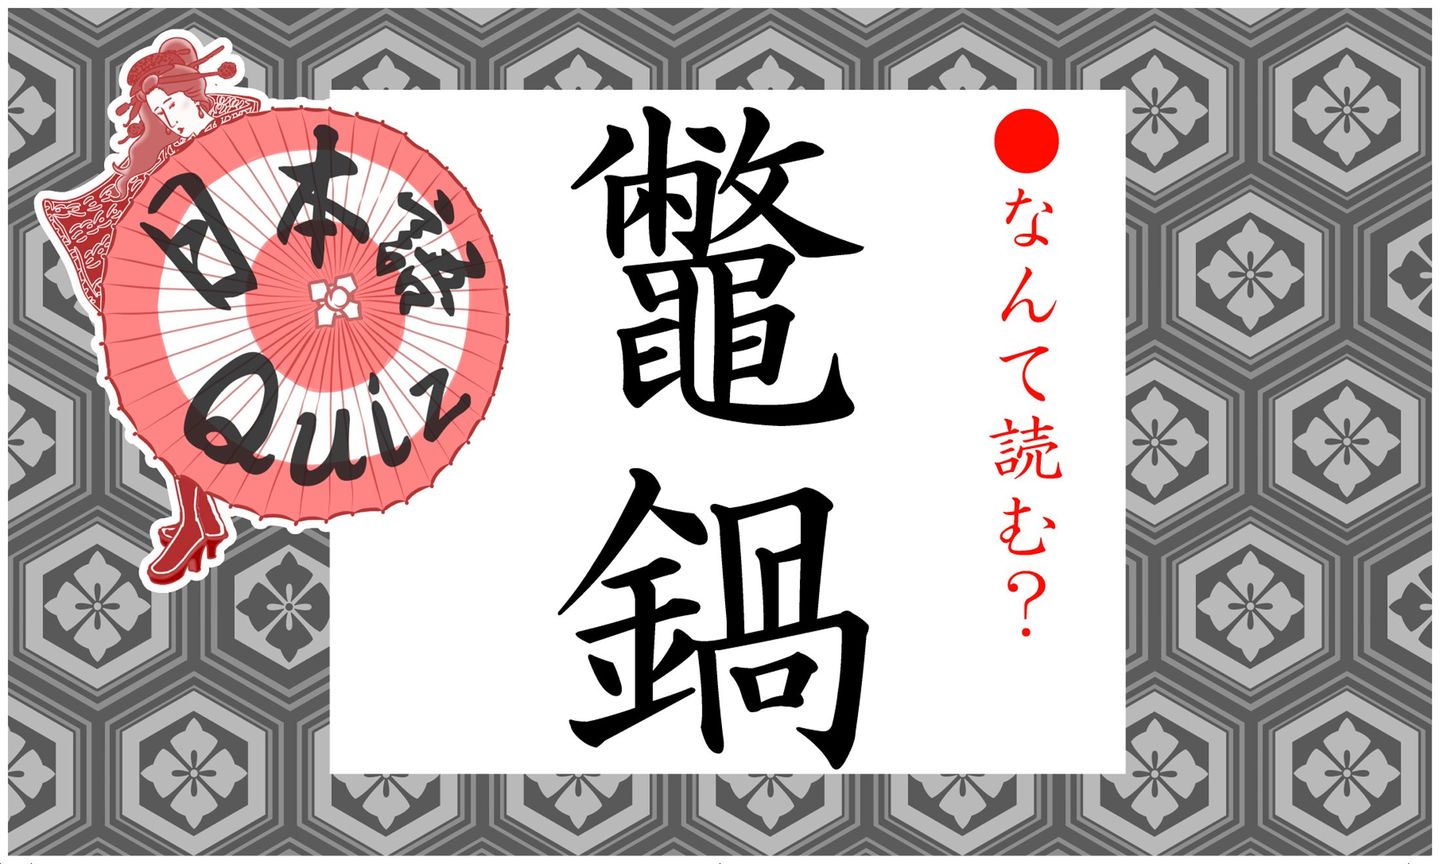 日本語クイズイラストと鼈鍋の文字